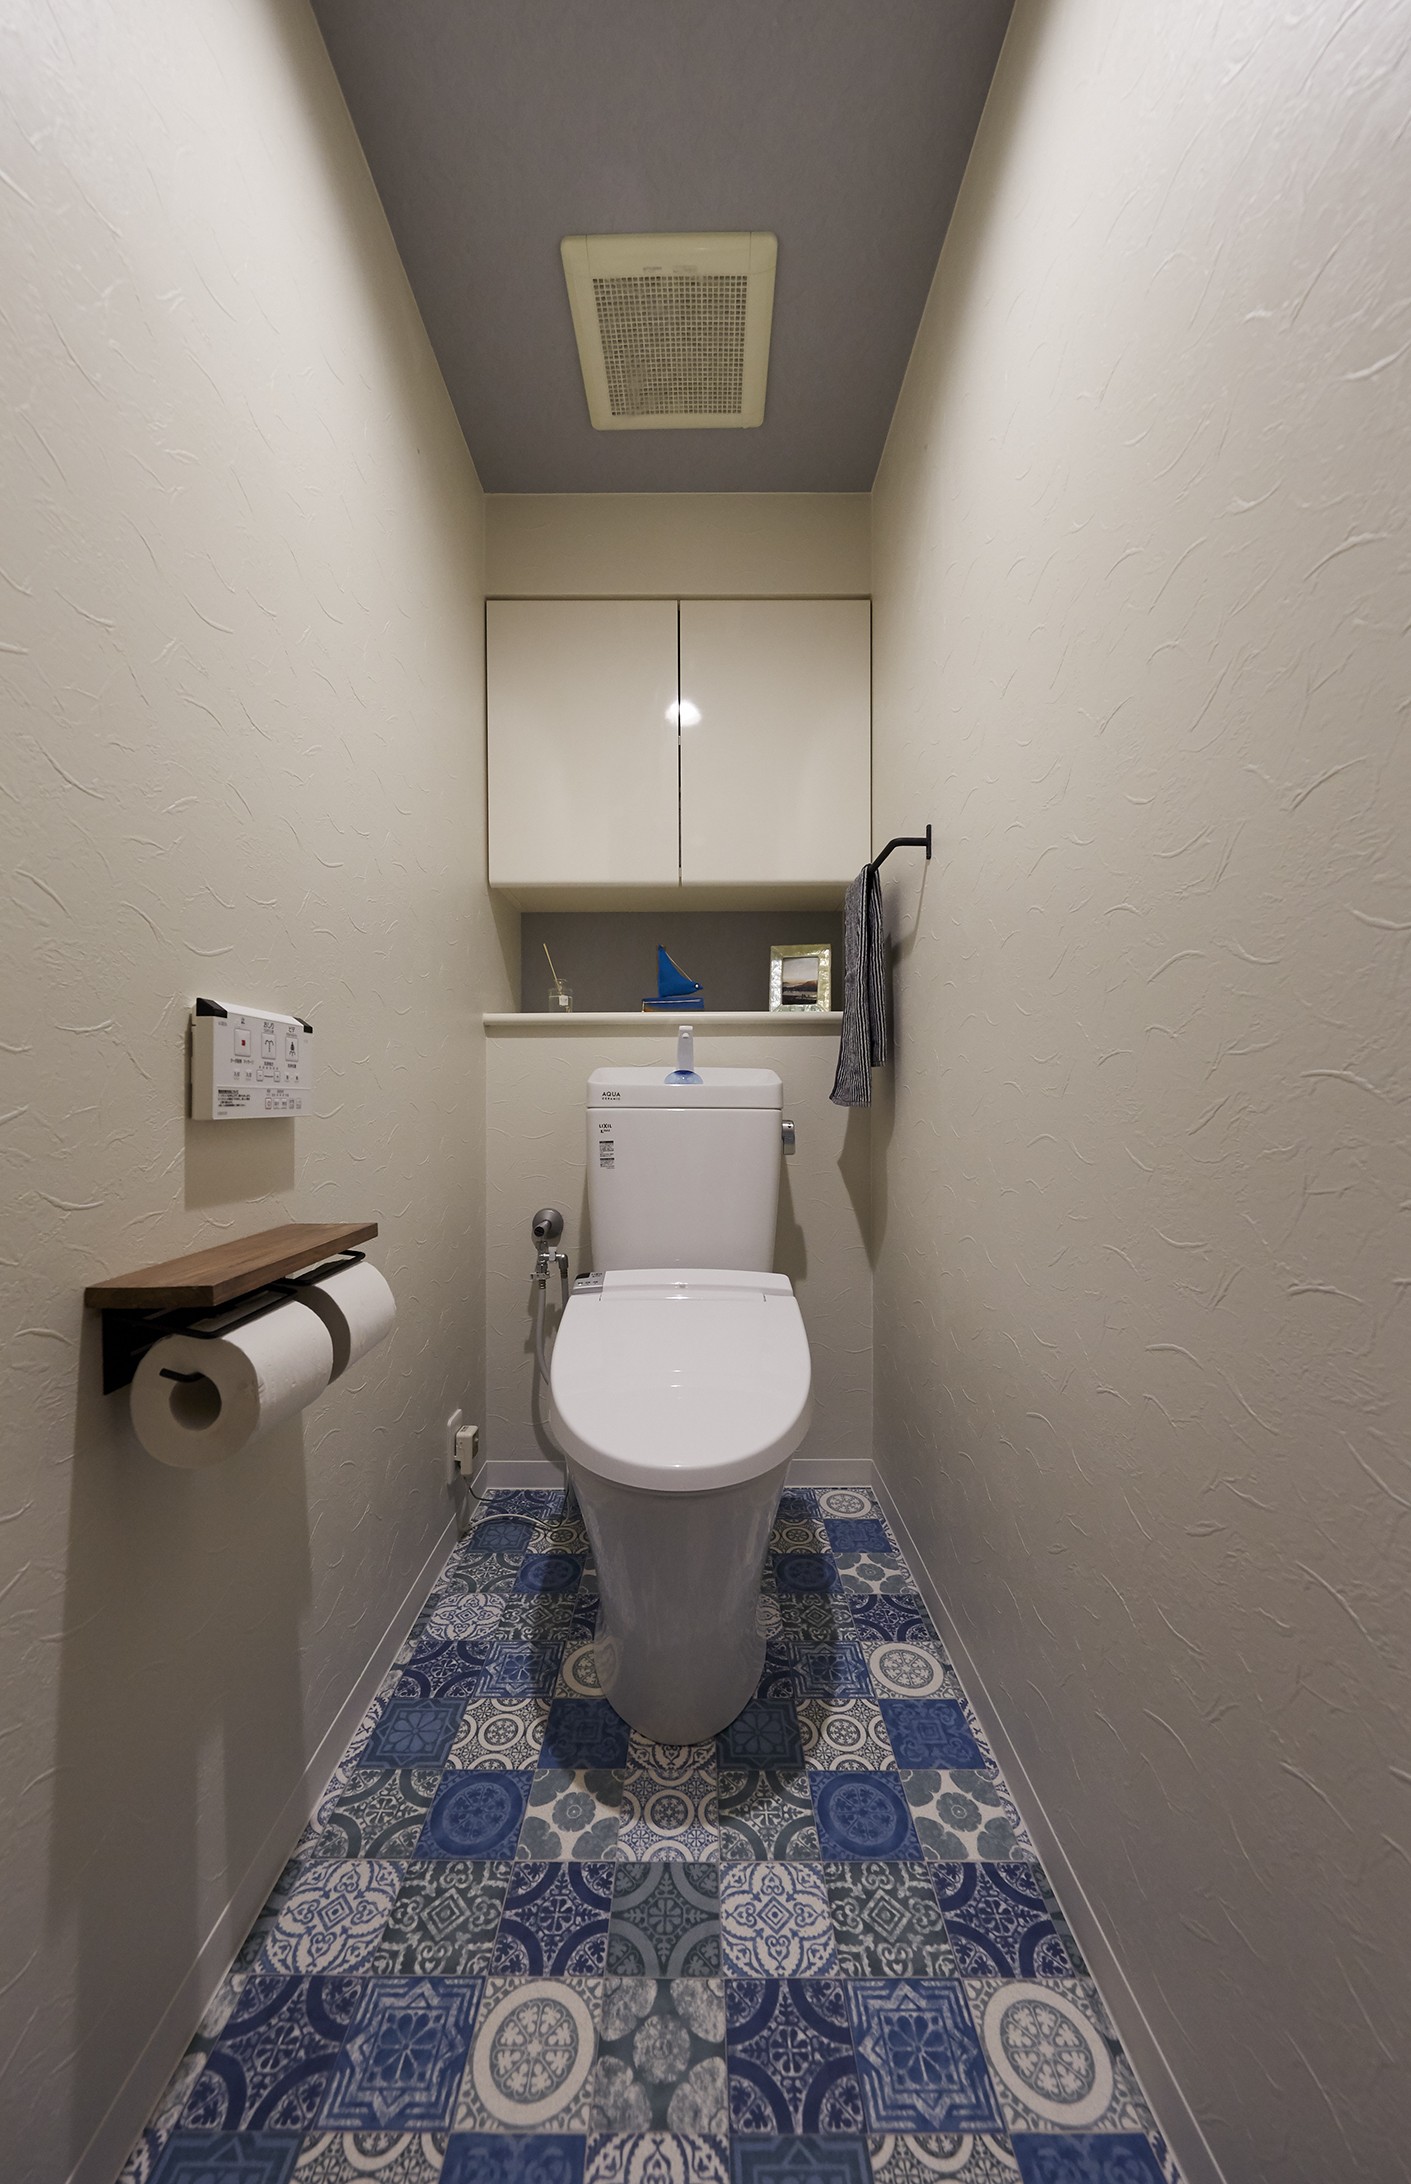 お部屋全体のコーディネートとマッチしたブルーのクッションフロアで、マリンテイストなトイレ空間(アメリカ西海岸の暮らし